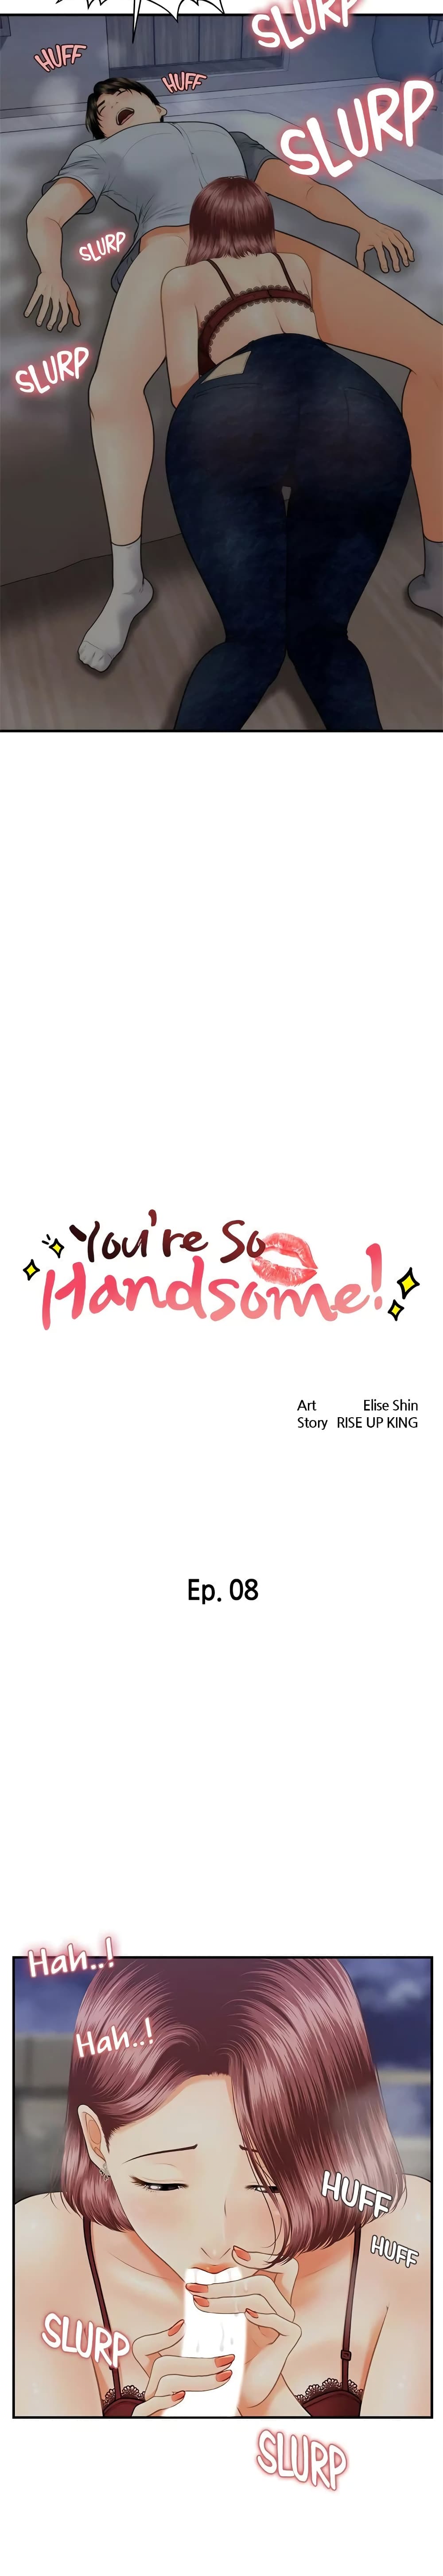 Hey, Handsome 8 (2)